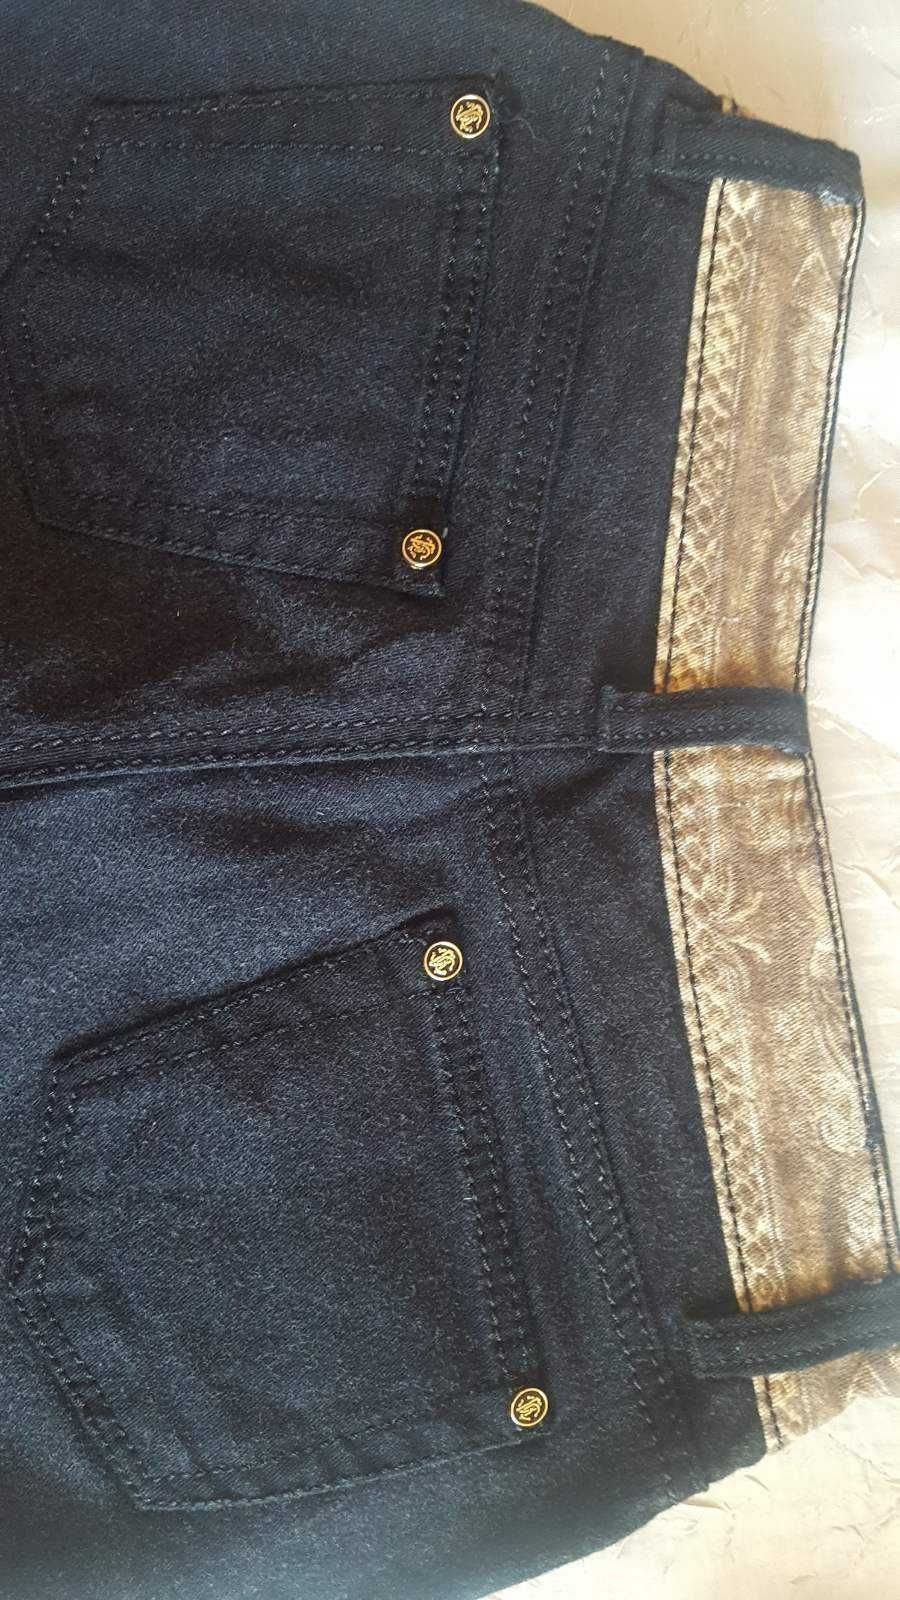 Нов оригинален панталон Roberto Cavalli - черен на цветя